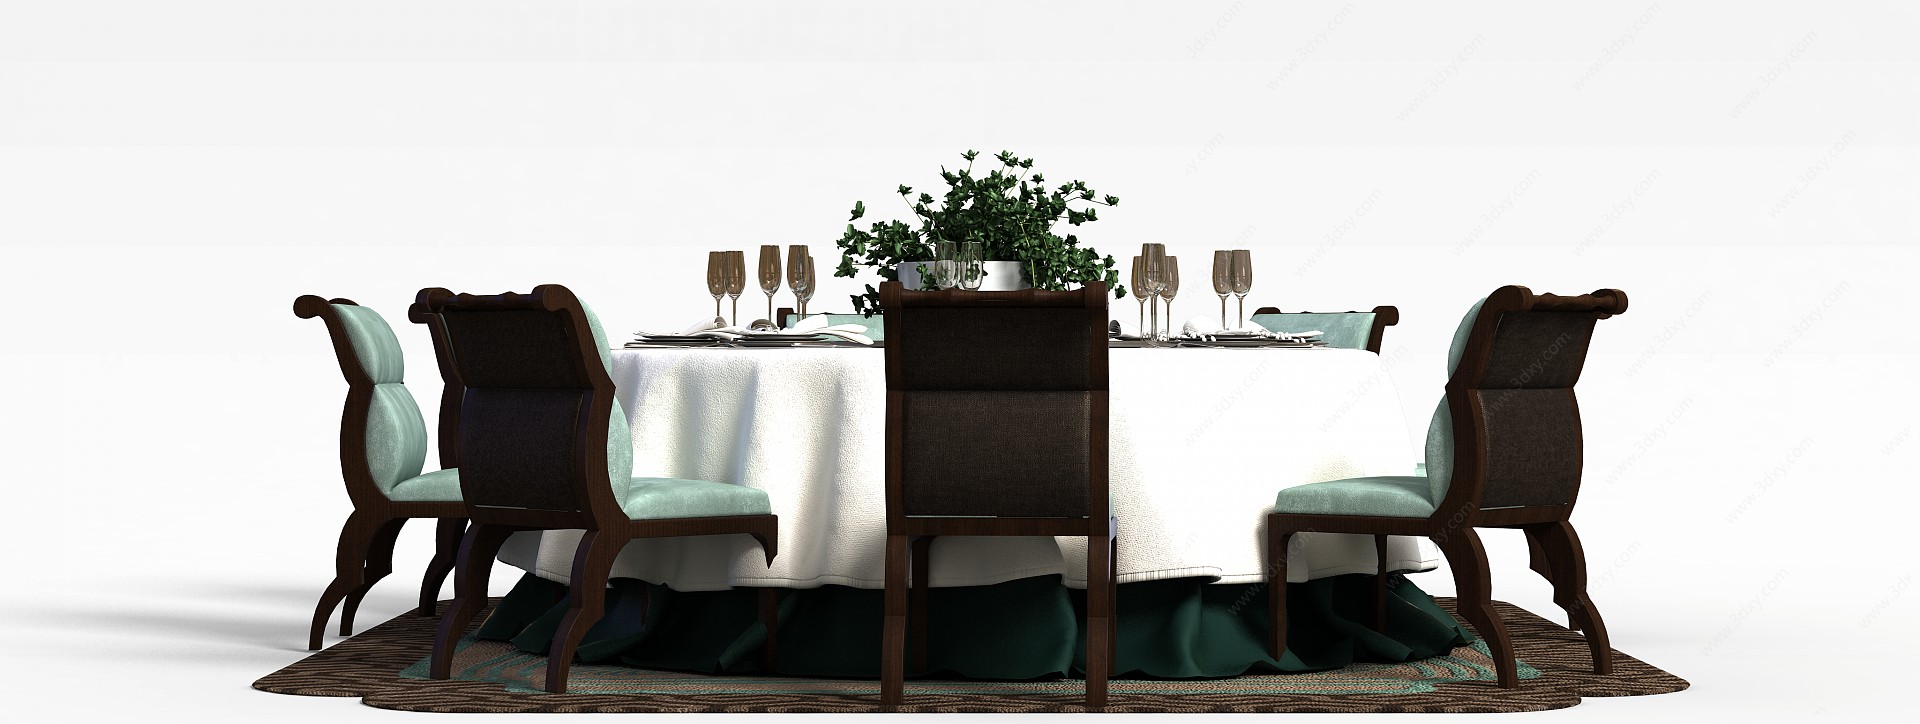 中式餐厅桌椅组合3D模型